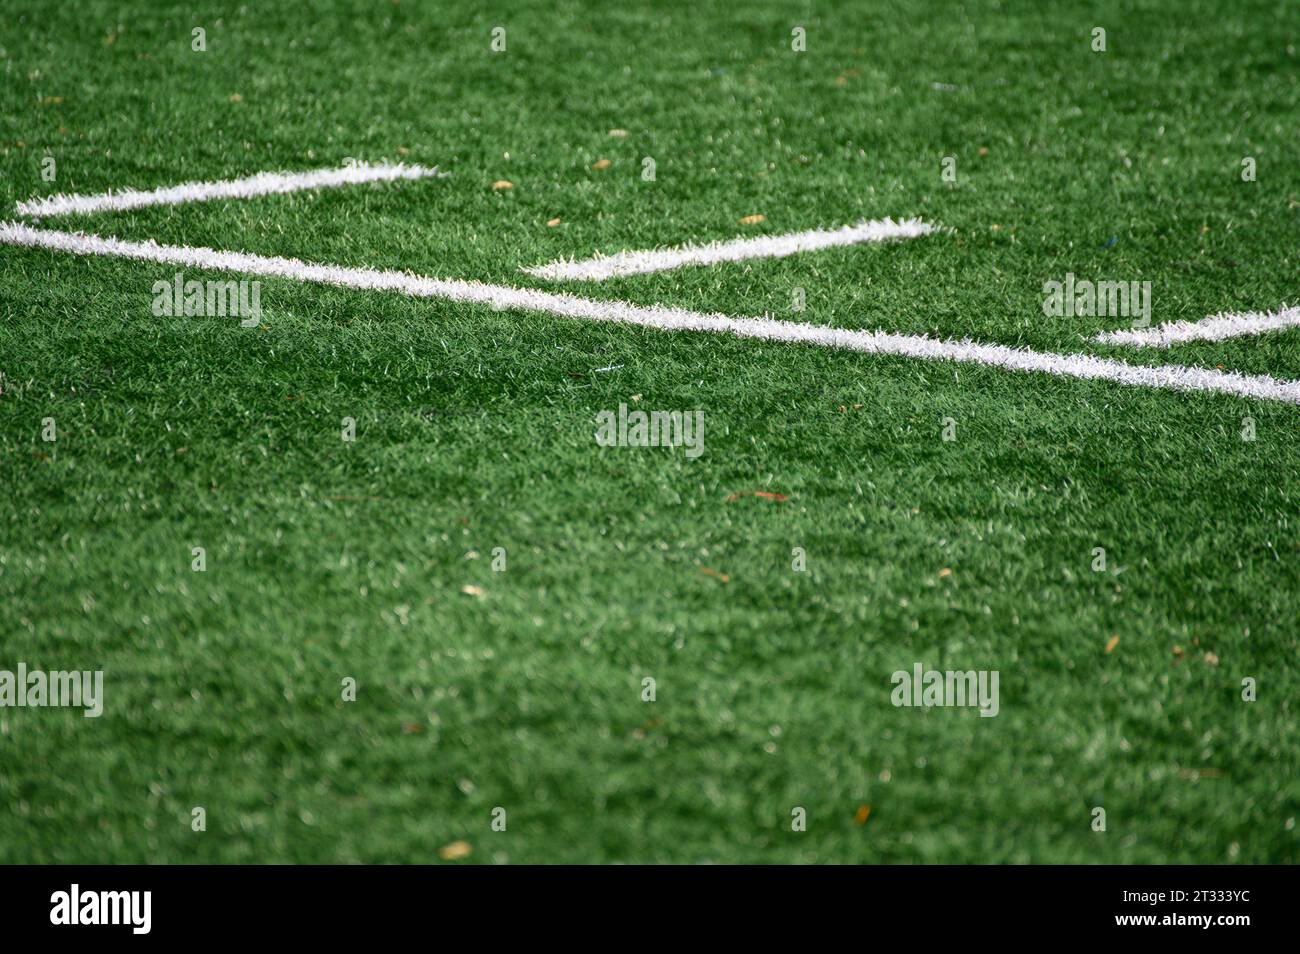 Marcature di yard su un campo da football americano Foto Stock